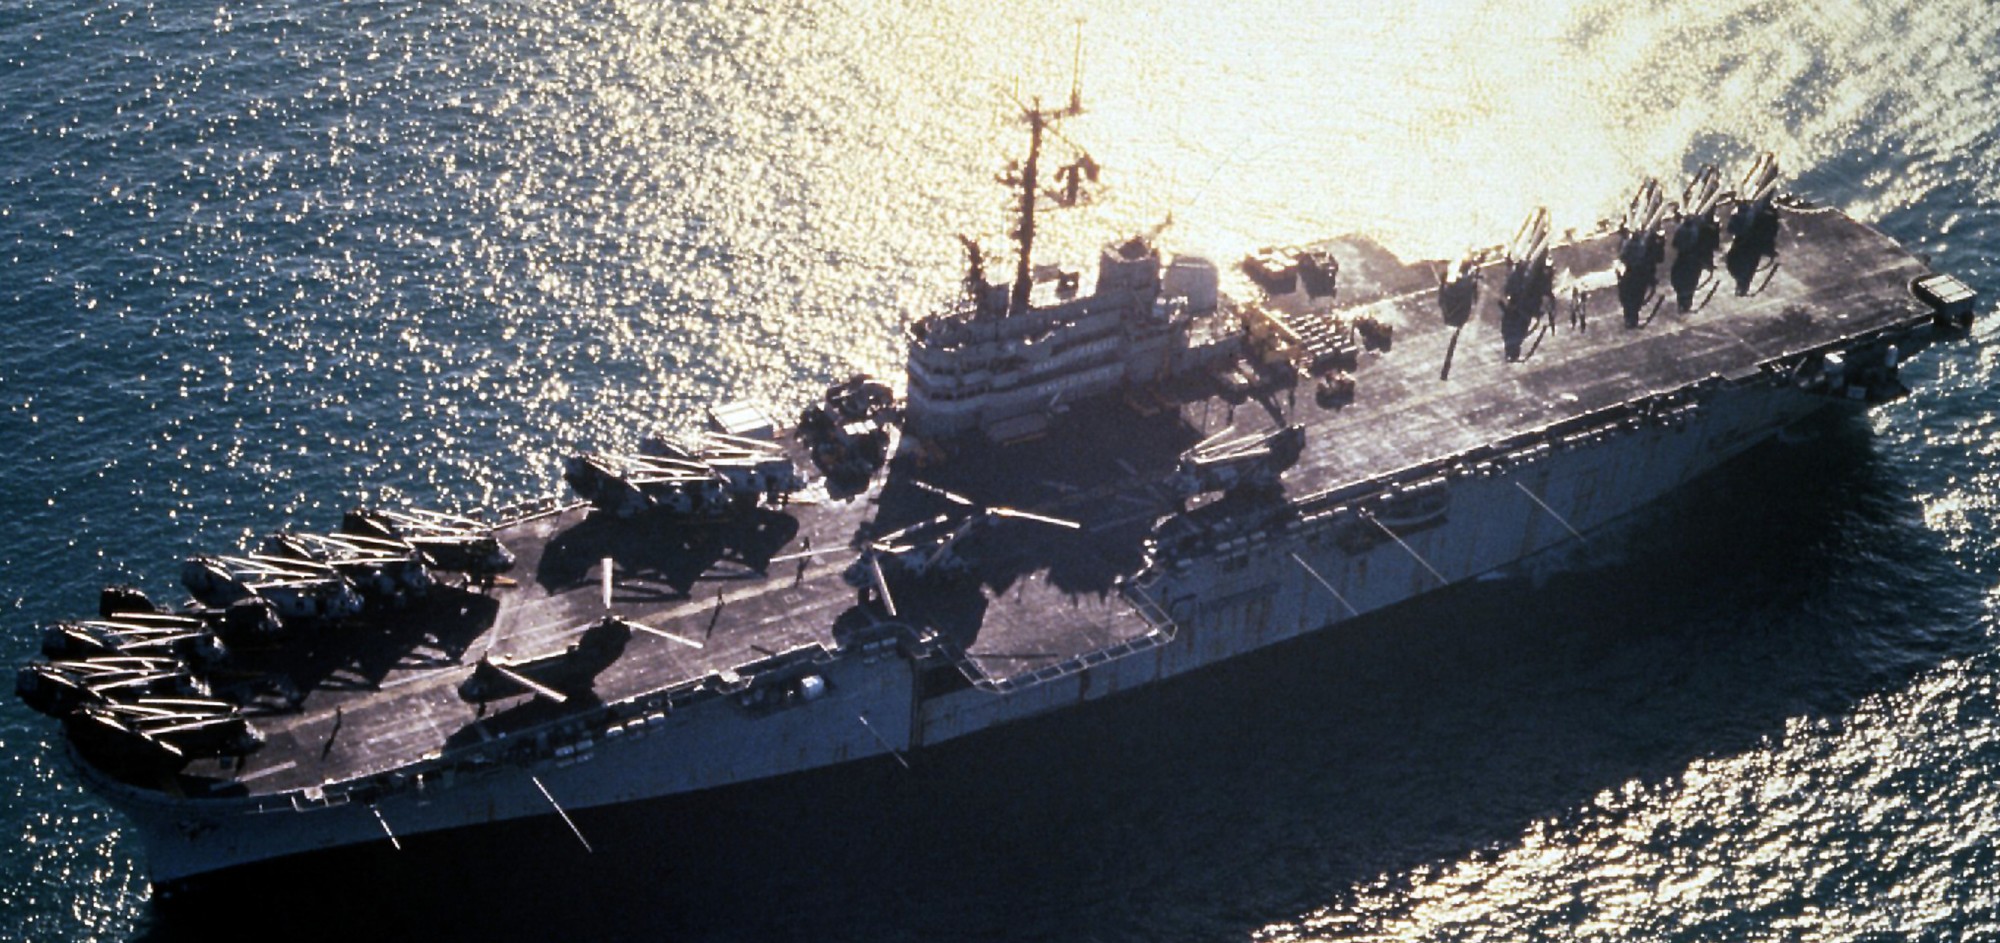 lph-9 uss guam iwo jima class amphibious assault ship landing platform helicopter us navy 35 operation desert storm shield 1991